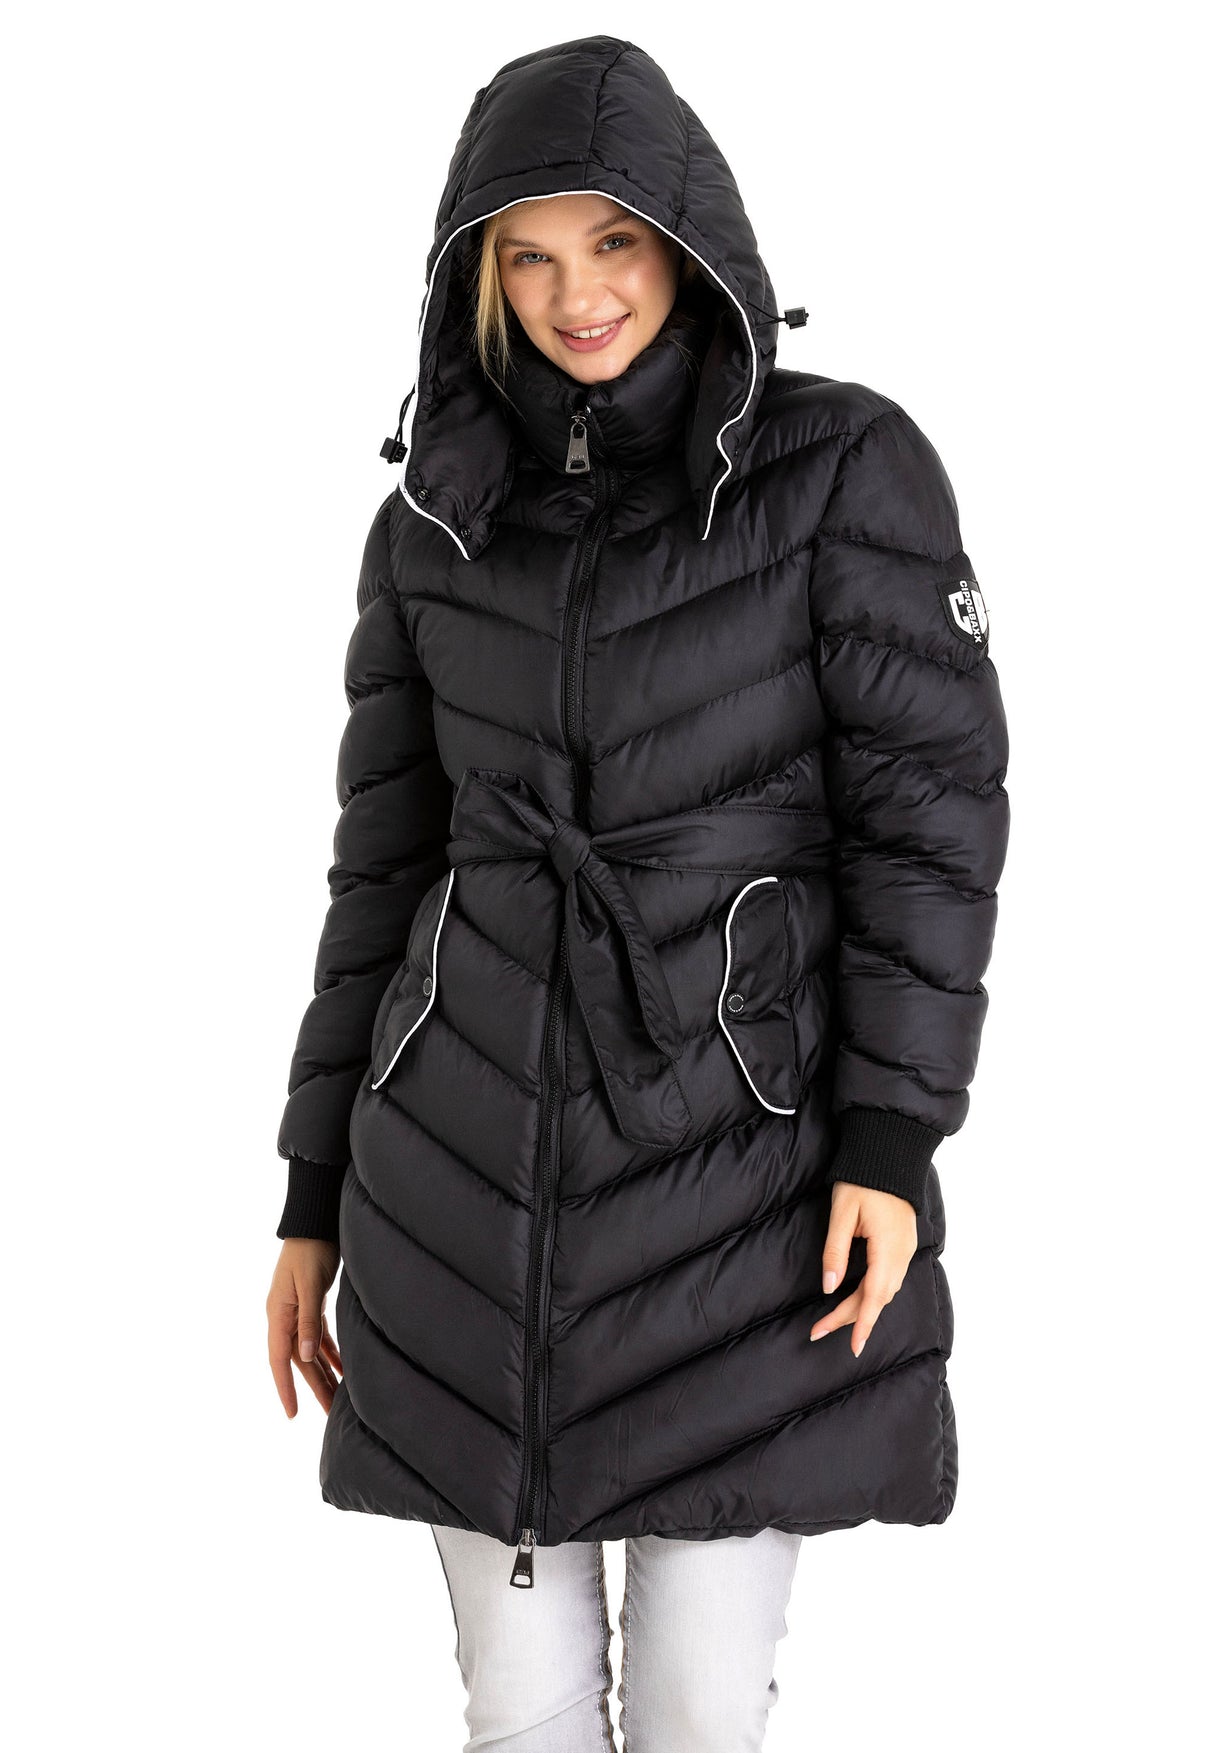 WM135 Damen Winterjacke Steppmantel  mit abnehmbarer Kapuze